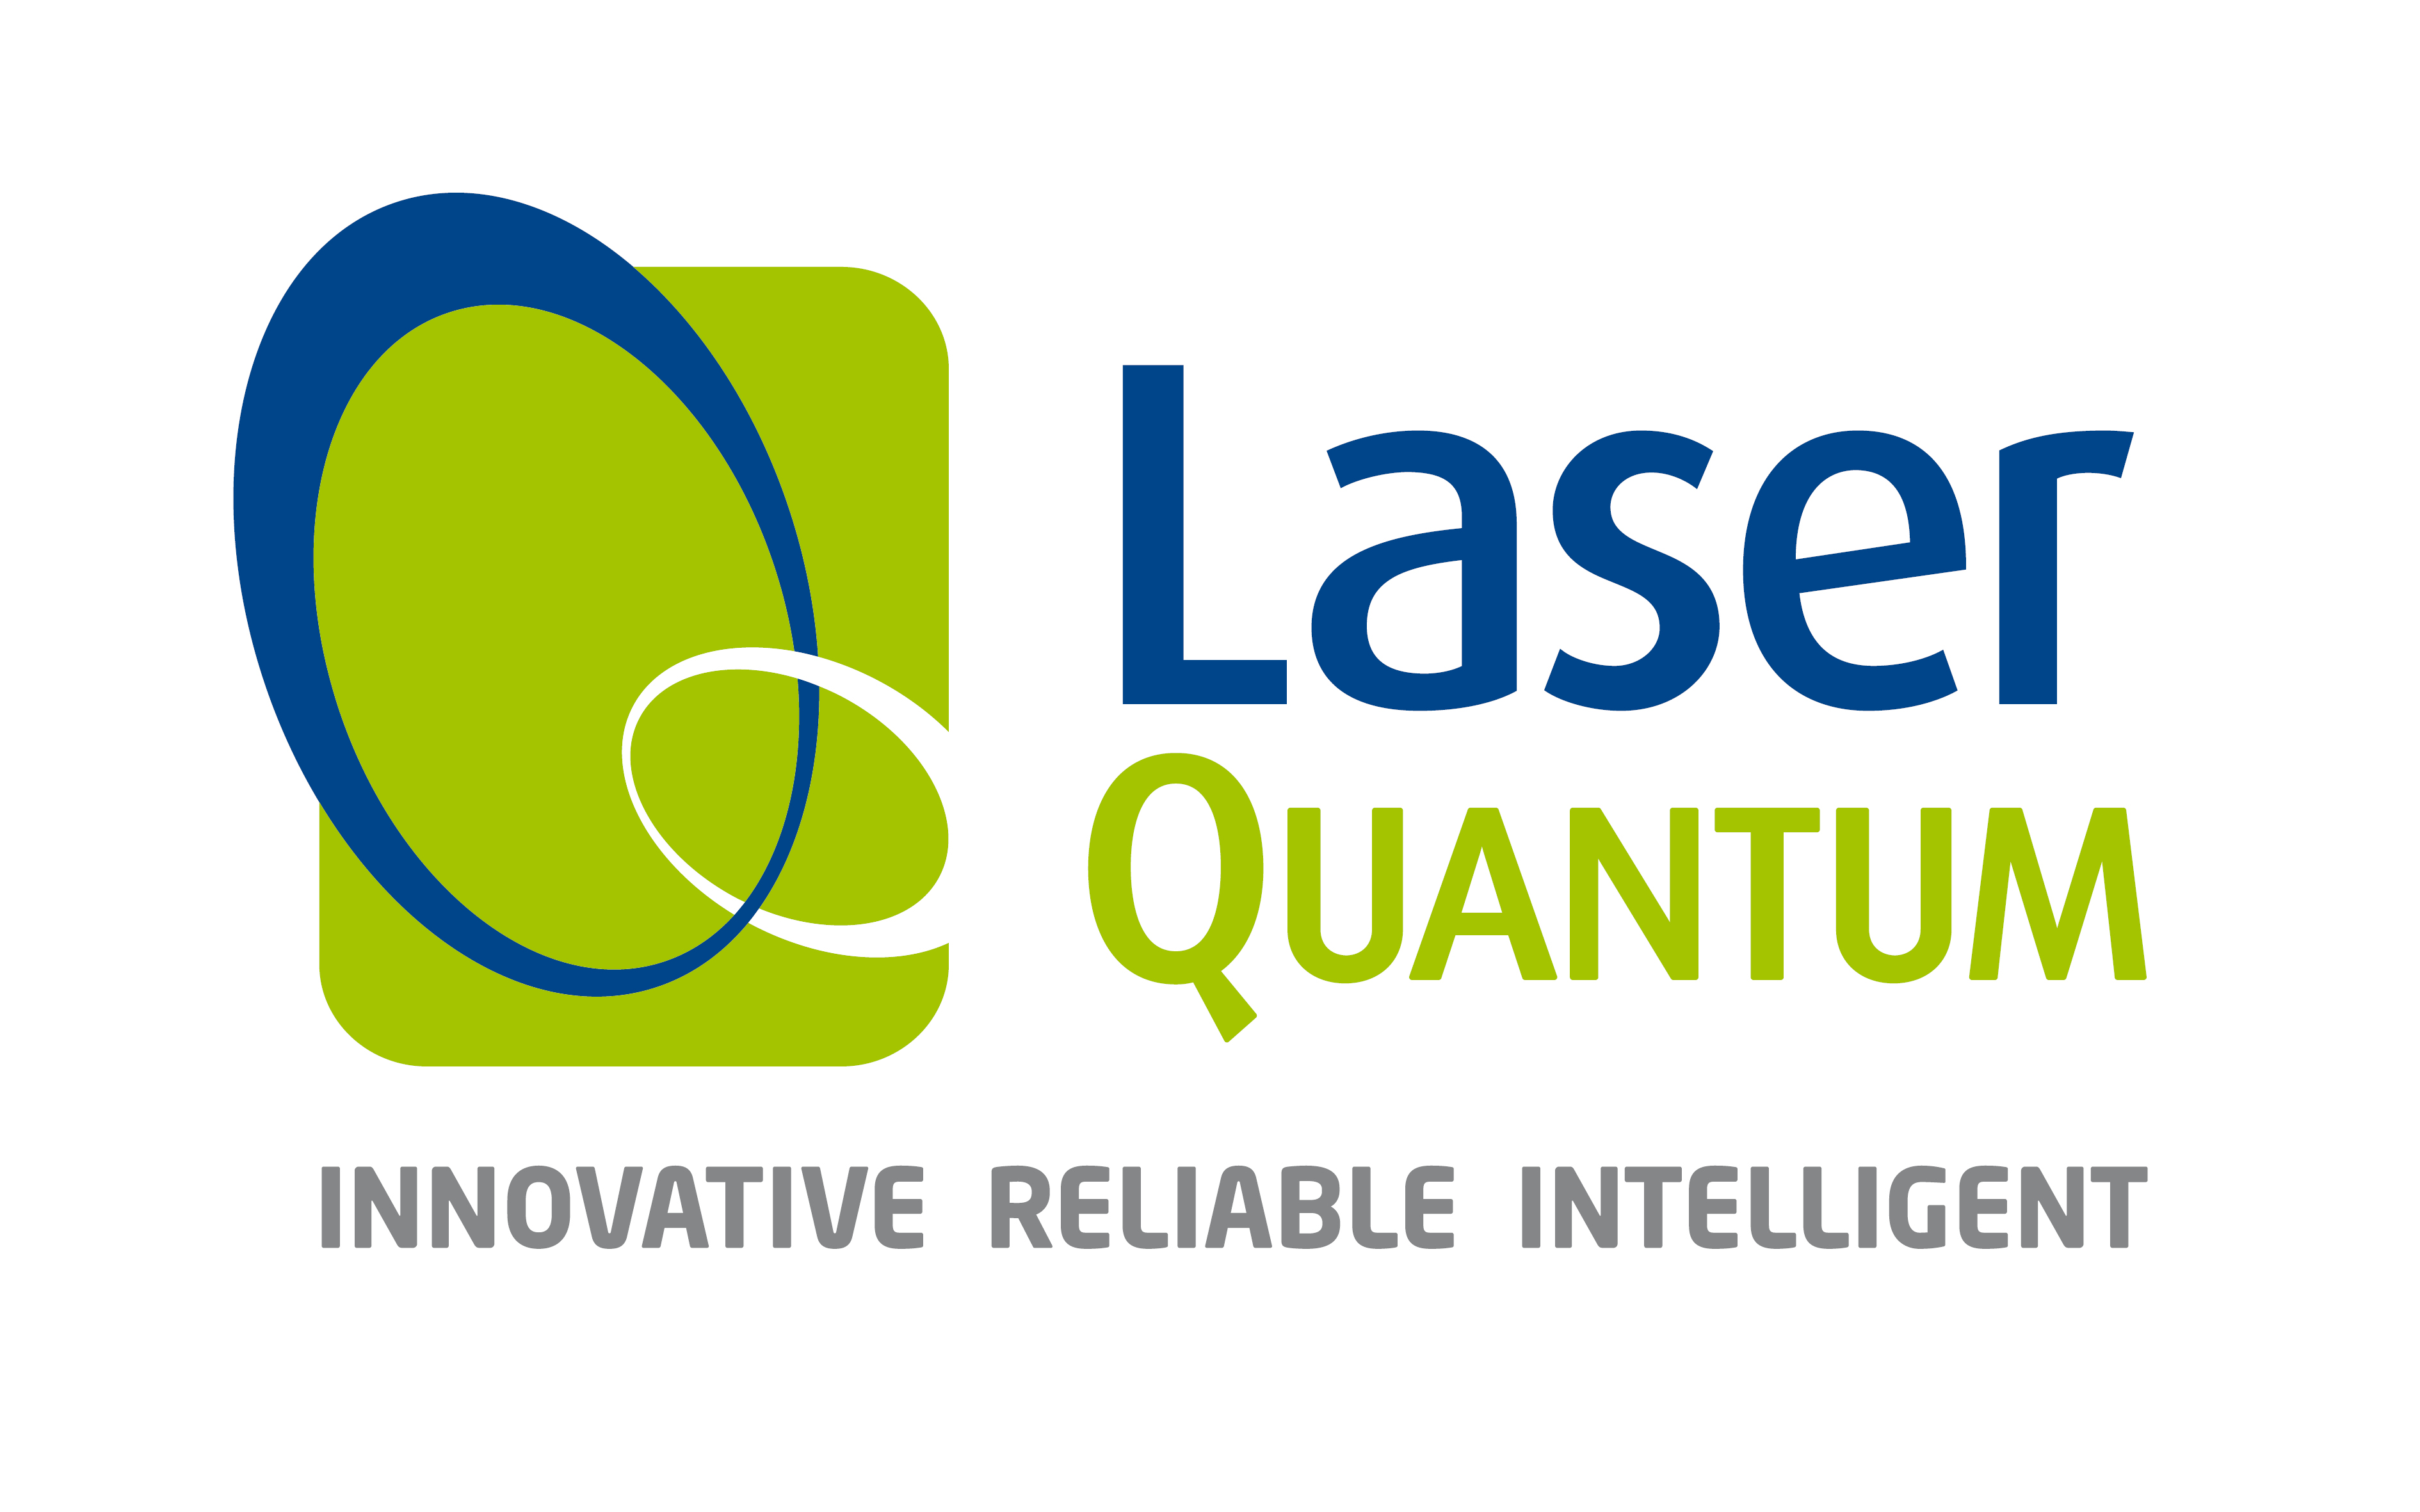 Laser Quantum